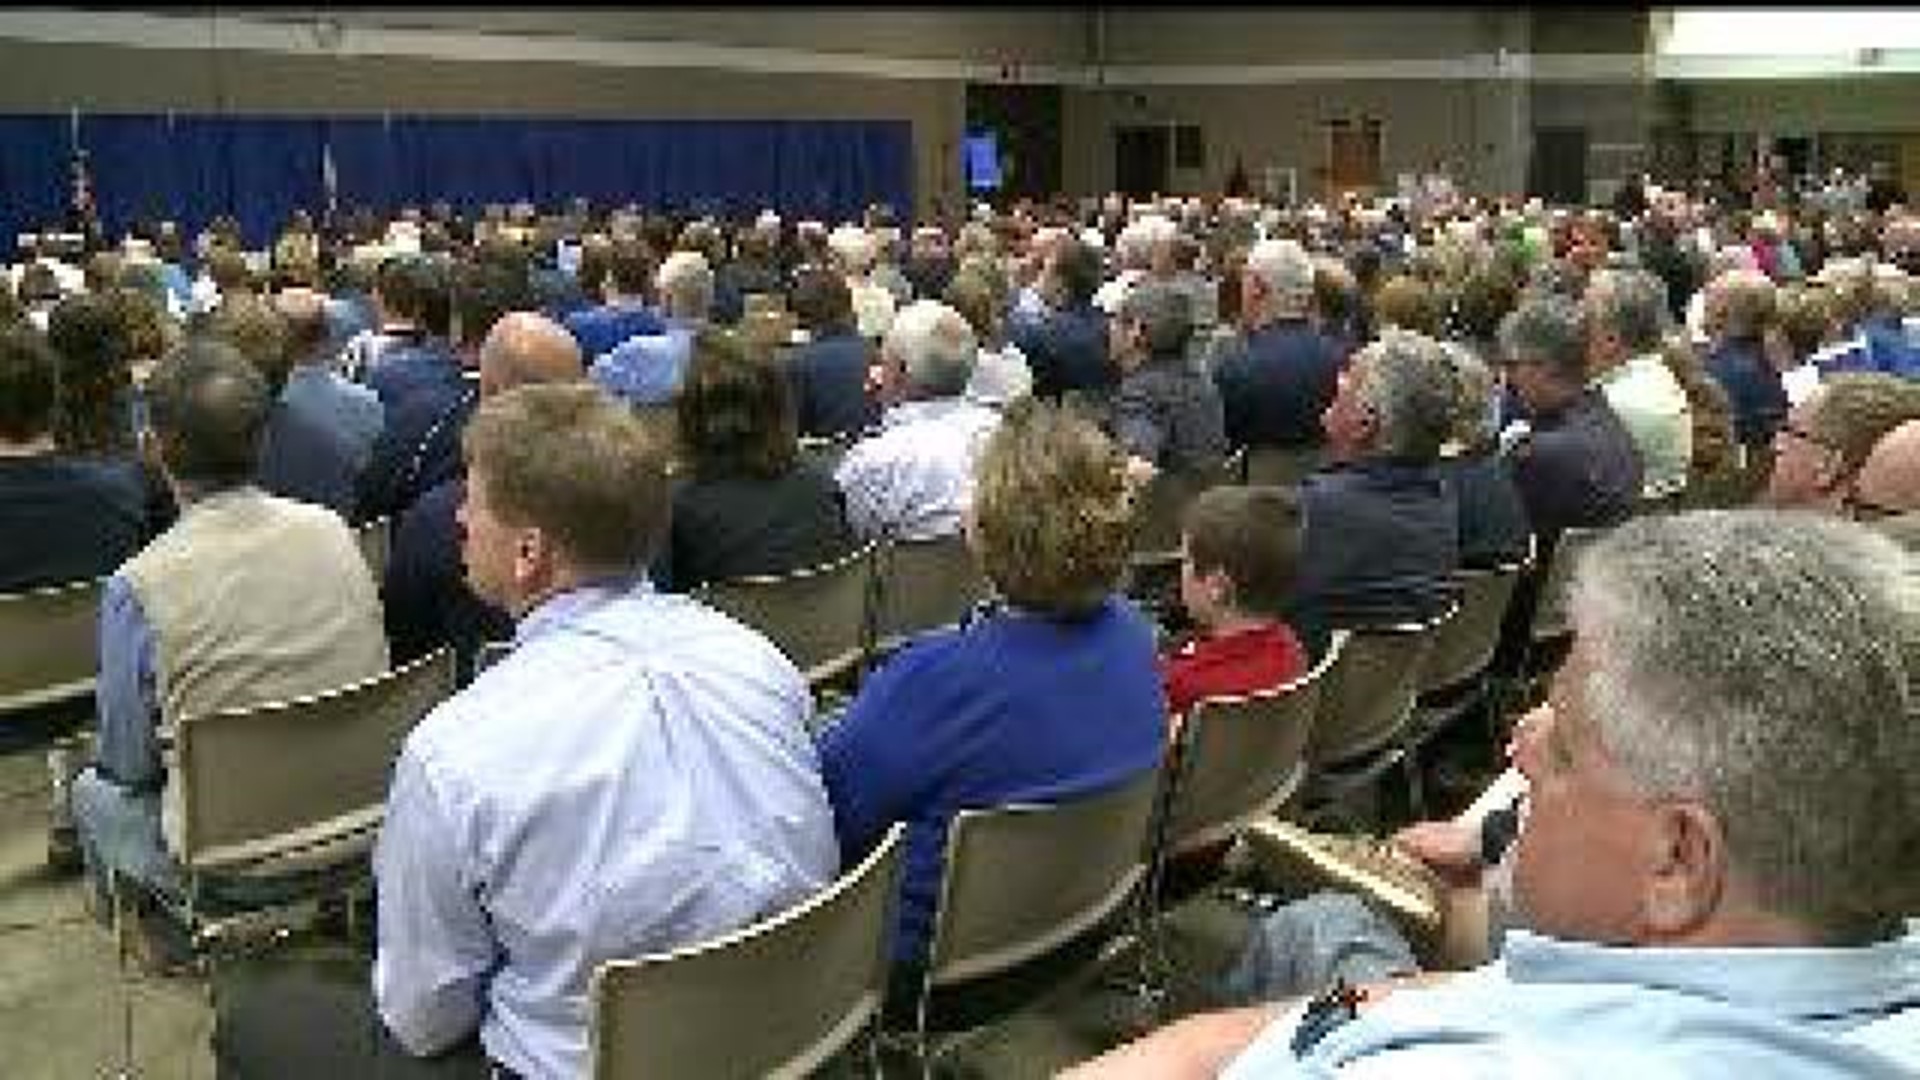 St. Ambrose stadium zoning hearing draws hundreds